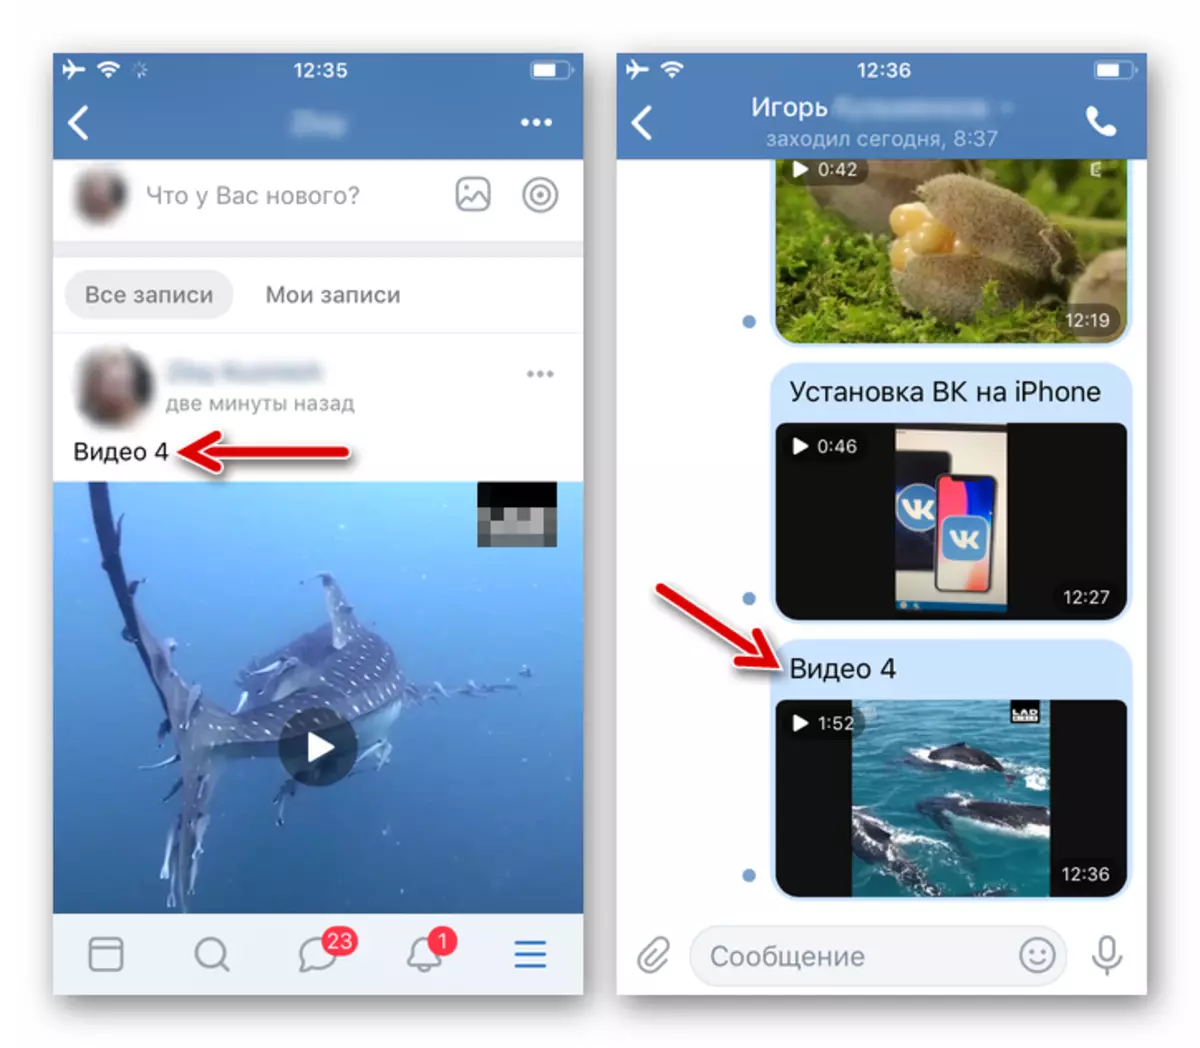 Vkontakte për iPhone - video është postuar në skemë dhe është dërguar në një mesazh përmes menaxherit të skedarit për iOS